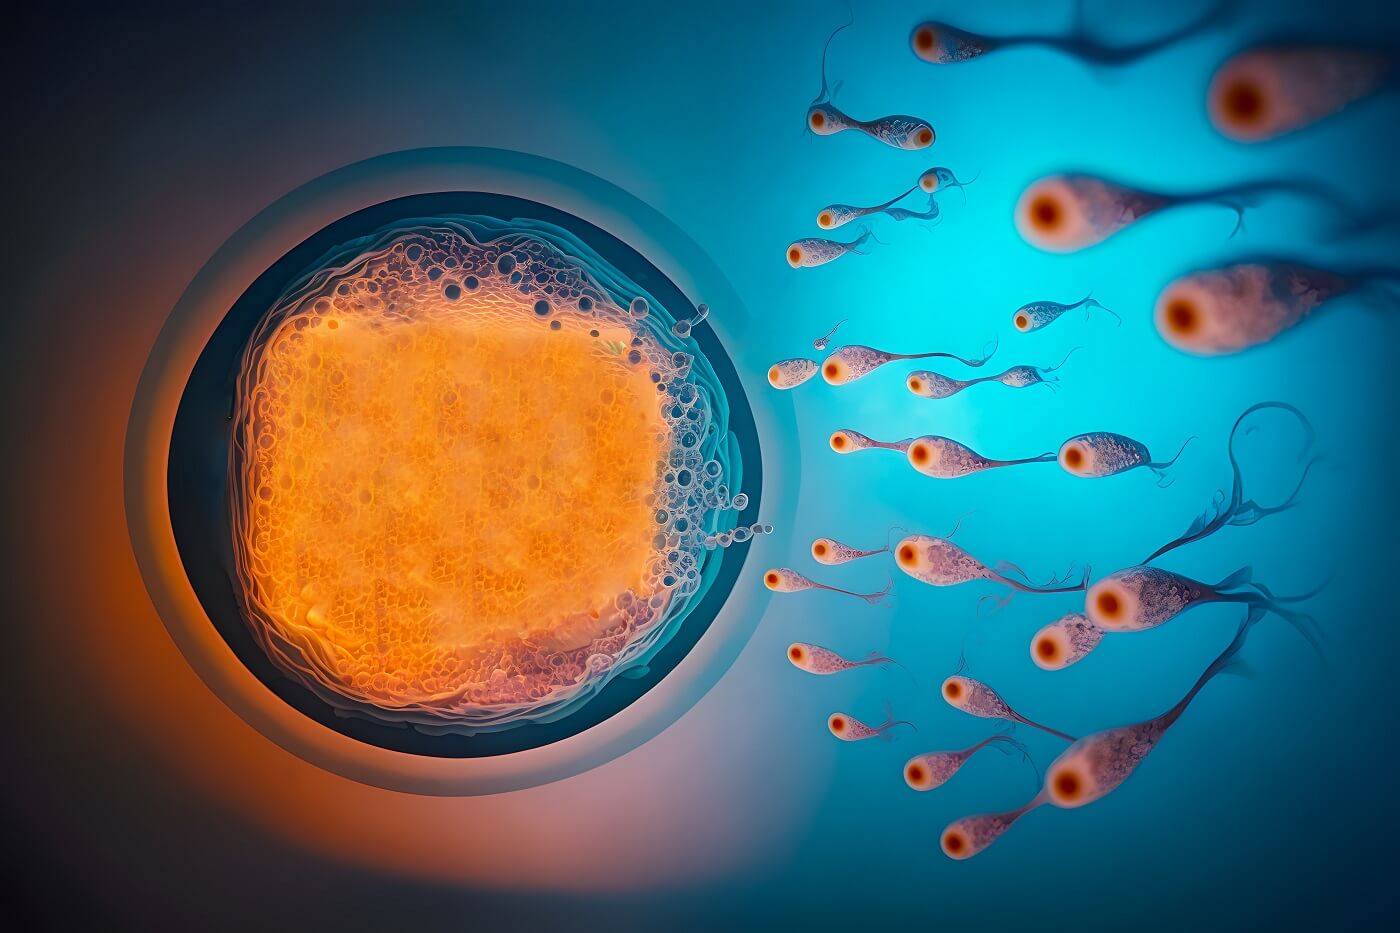 O regresso à vida do embrião: aprofundamento estudo de Inteligência Artificial revela aplicações promissoras